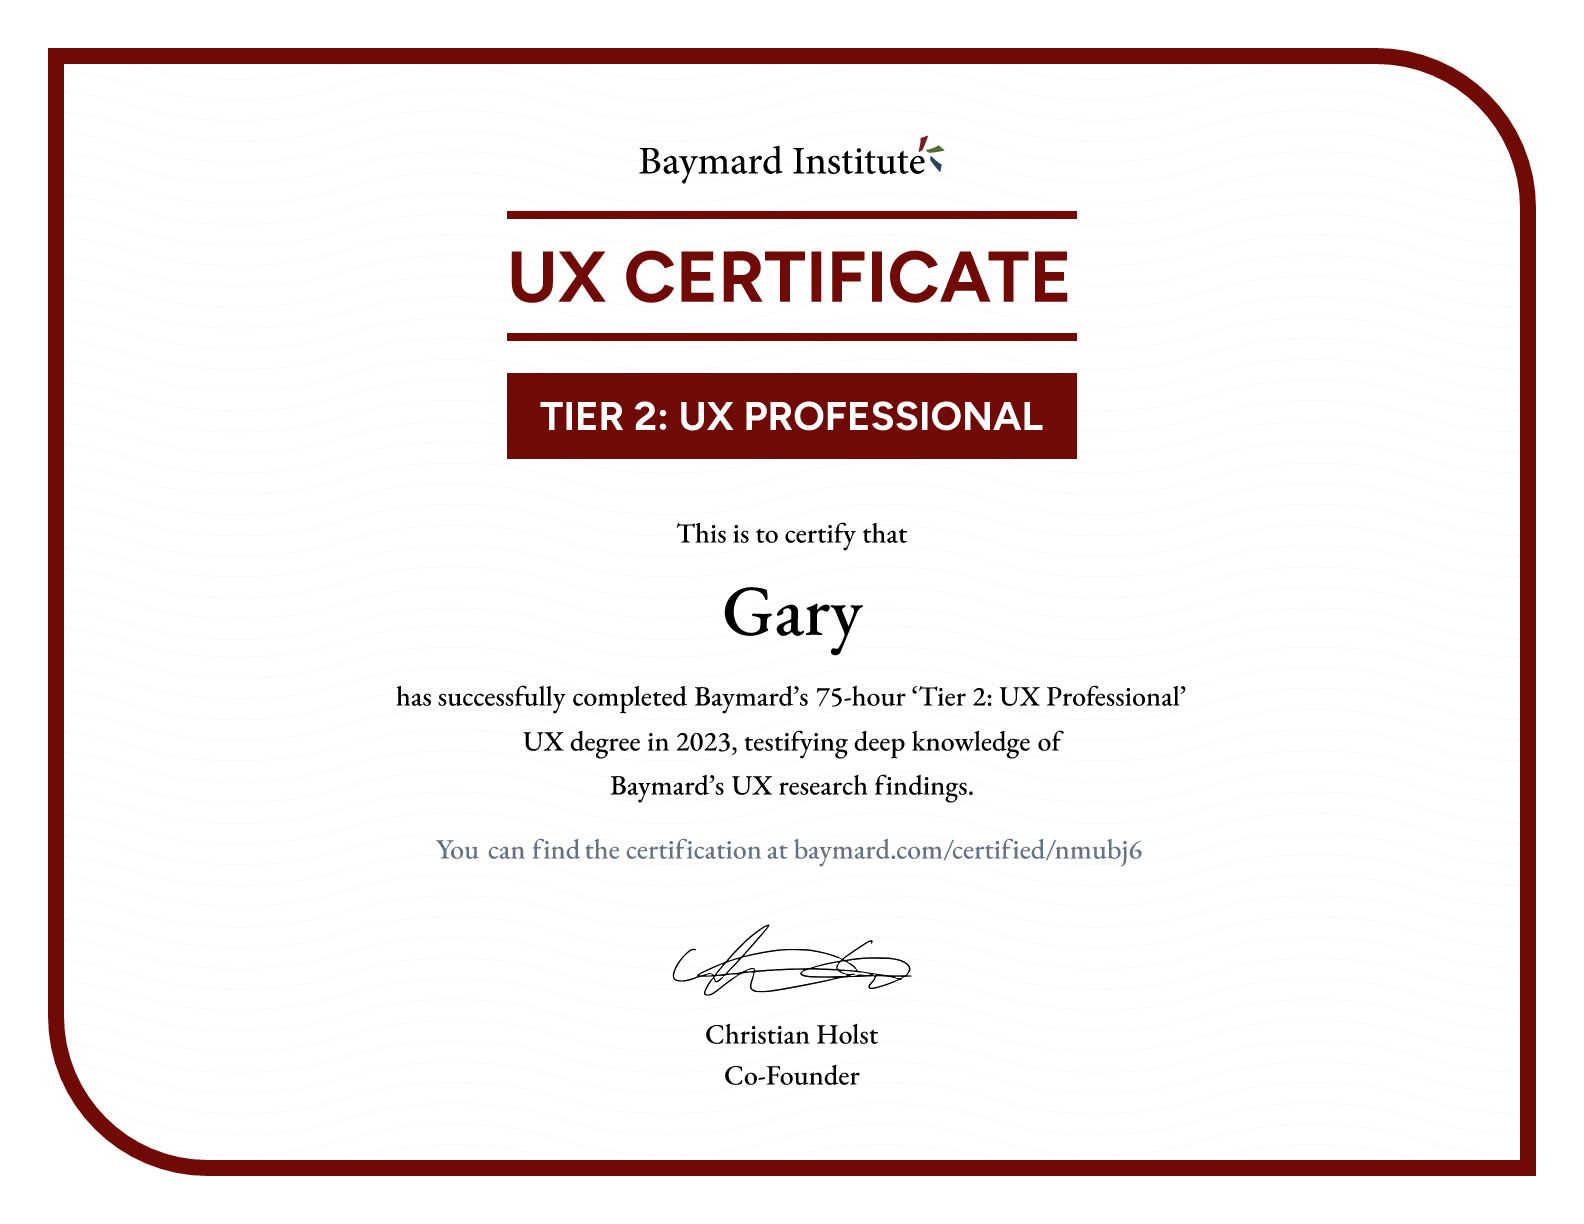 Gary’s certificate